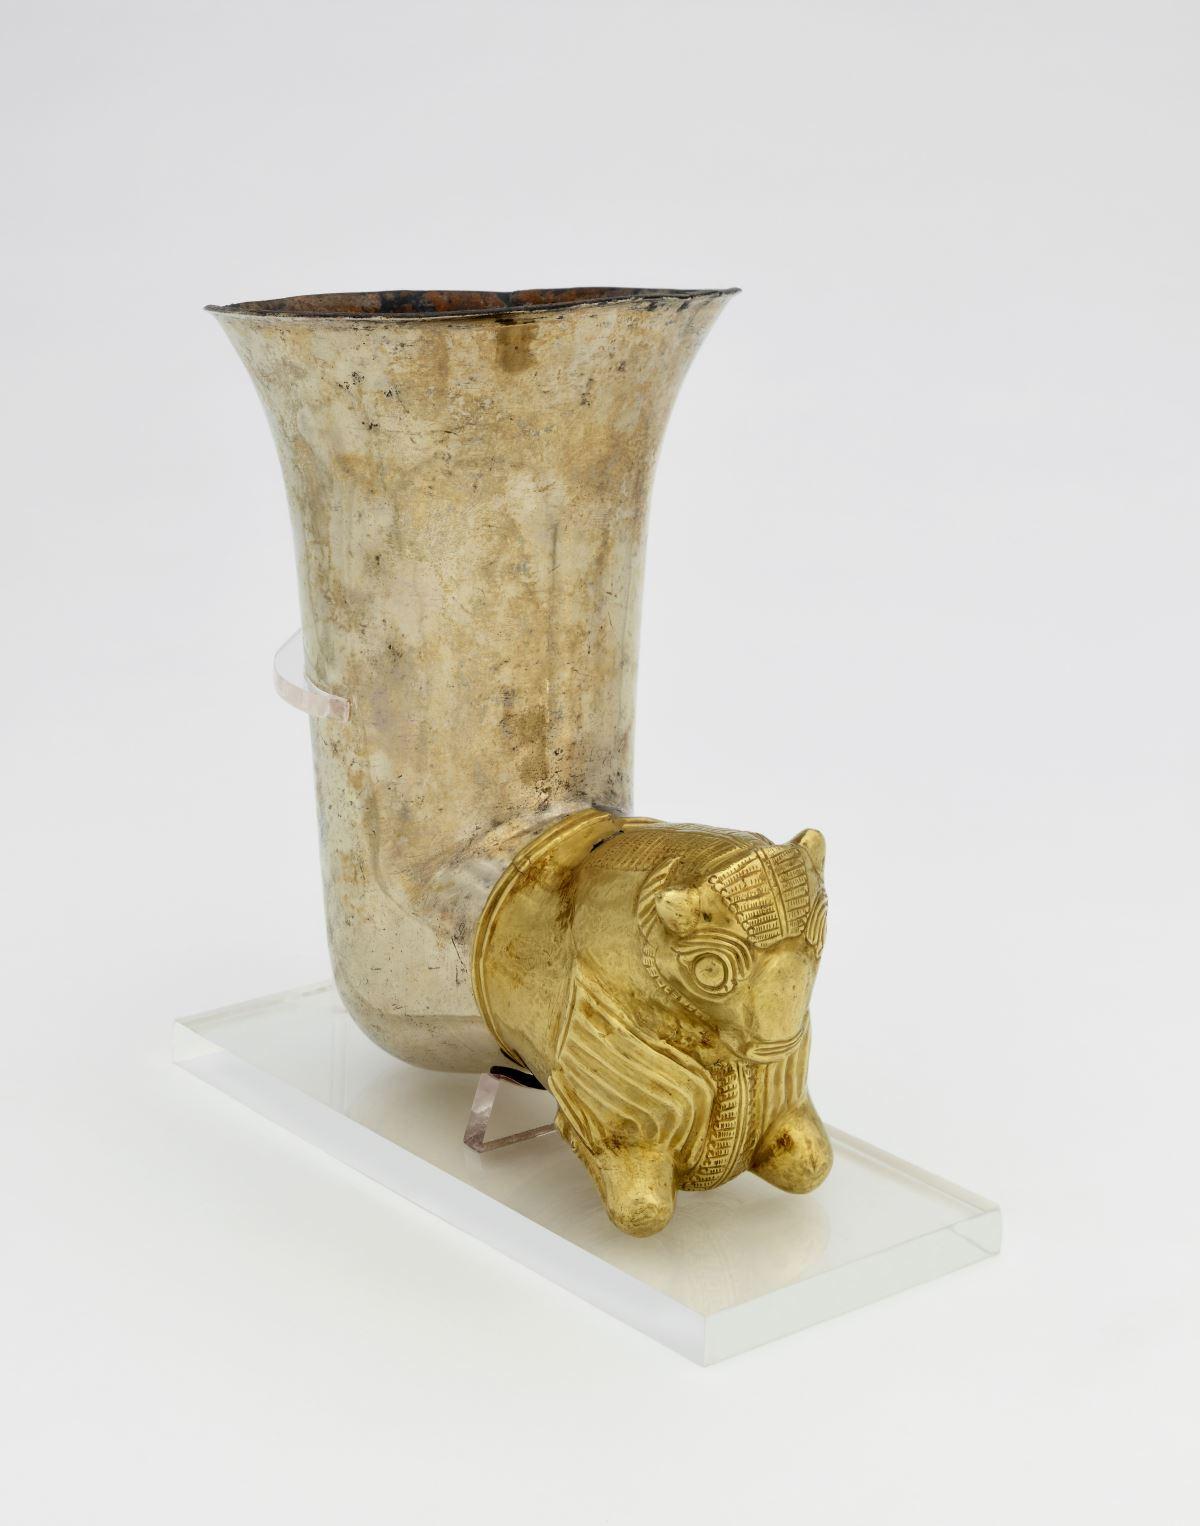 Copa en forma de cuerno Kahramanmaraş (Turquía). 500 a. C. Plata y oro. © The Trustees of the British Museum